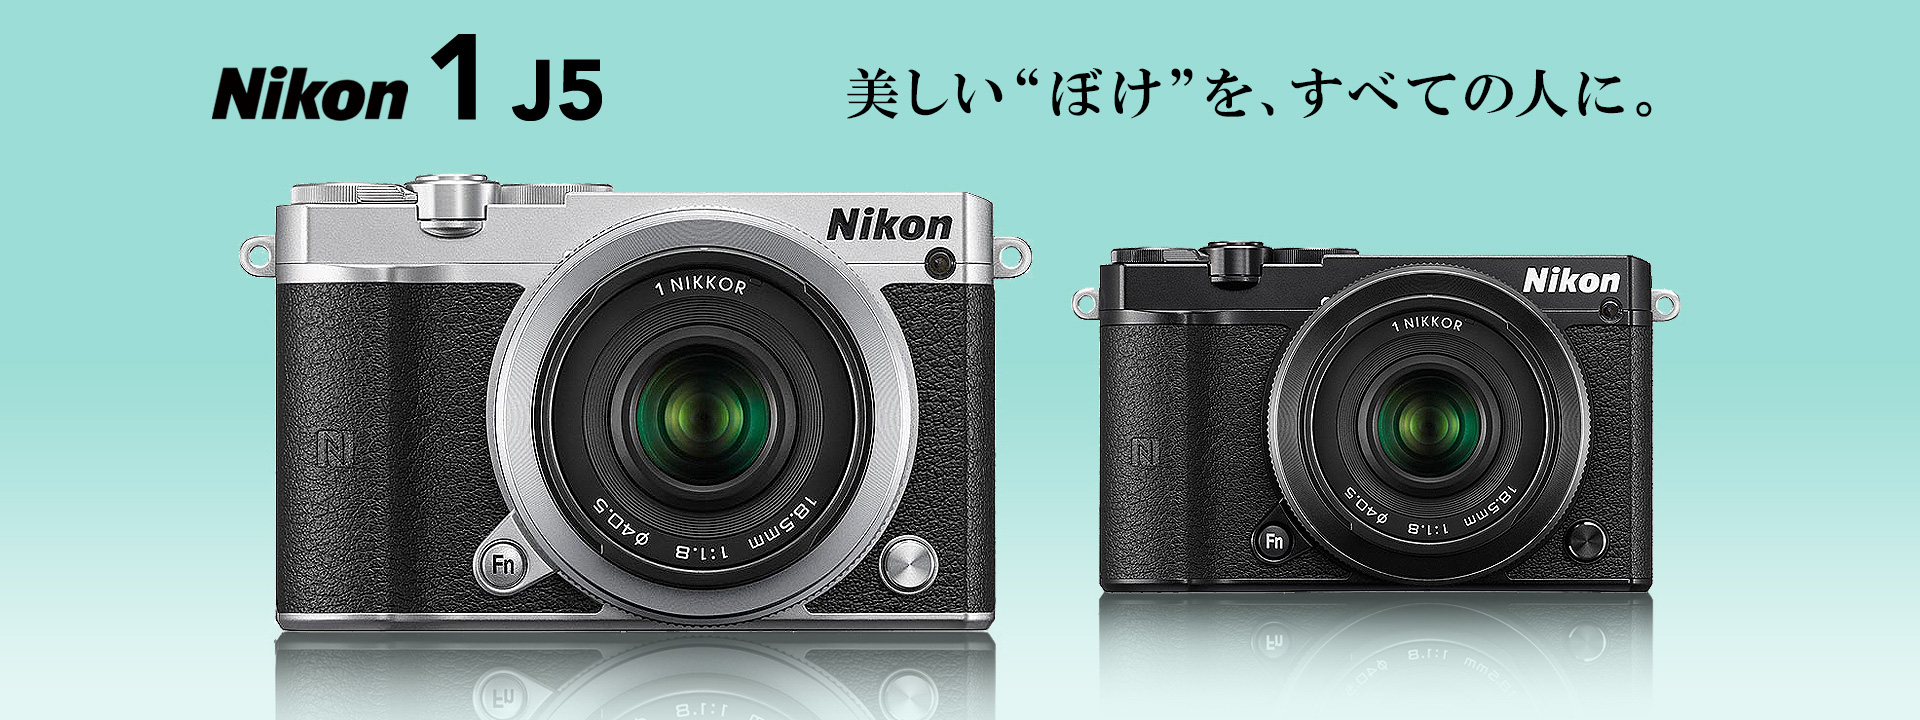 ニコン ミラーレス一眼【Nikon1 J5】